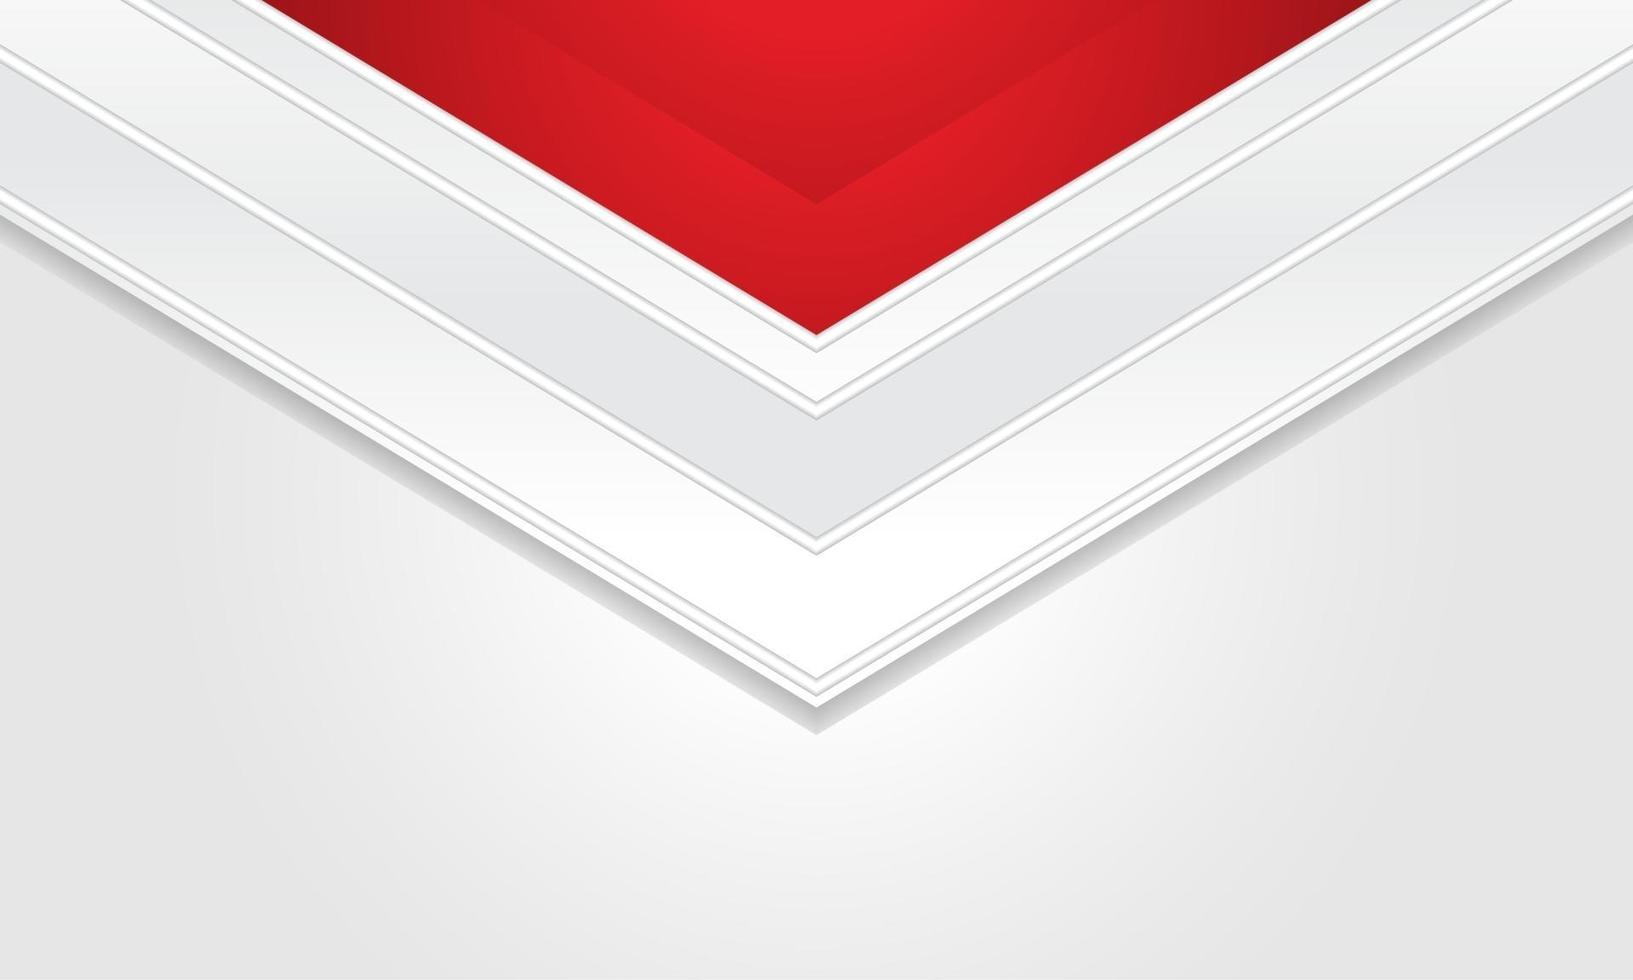 sechseckiger abstrakter weißer Hintergrund mit roter Rahmenform. eps 10 vektor